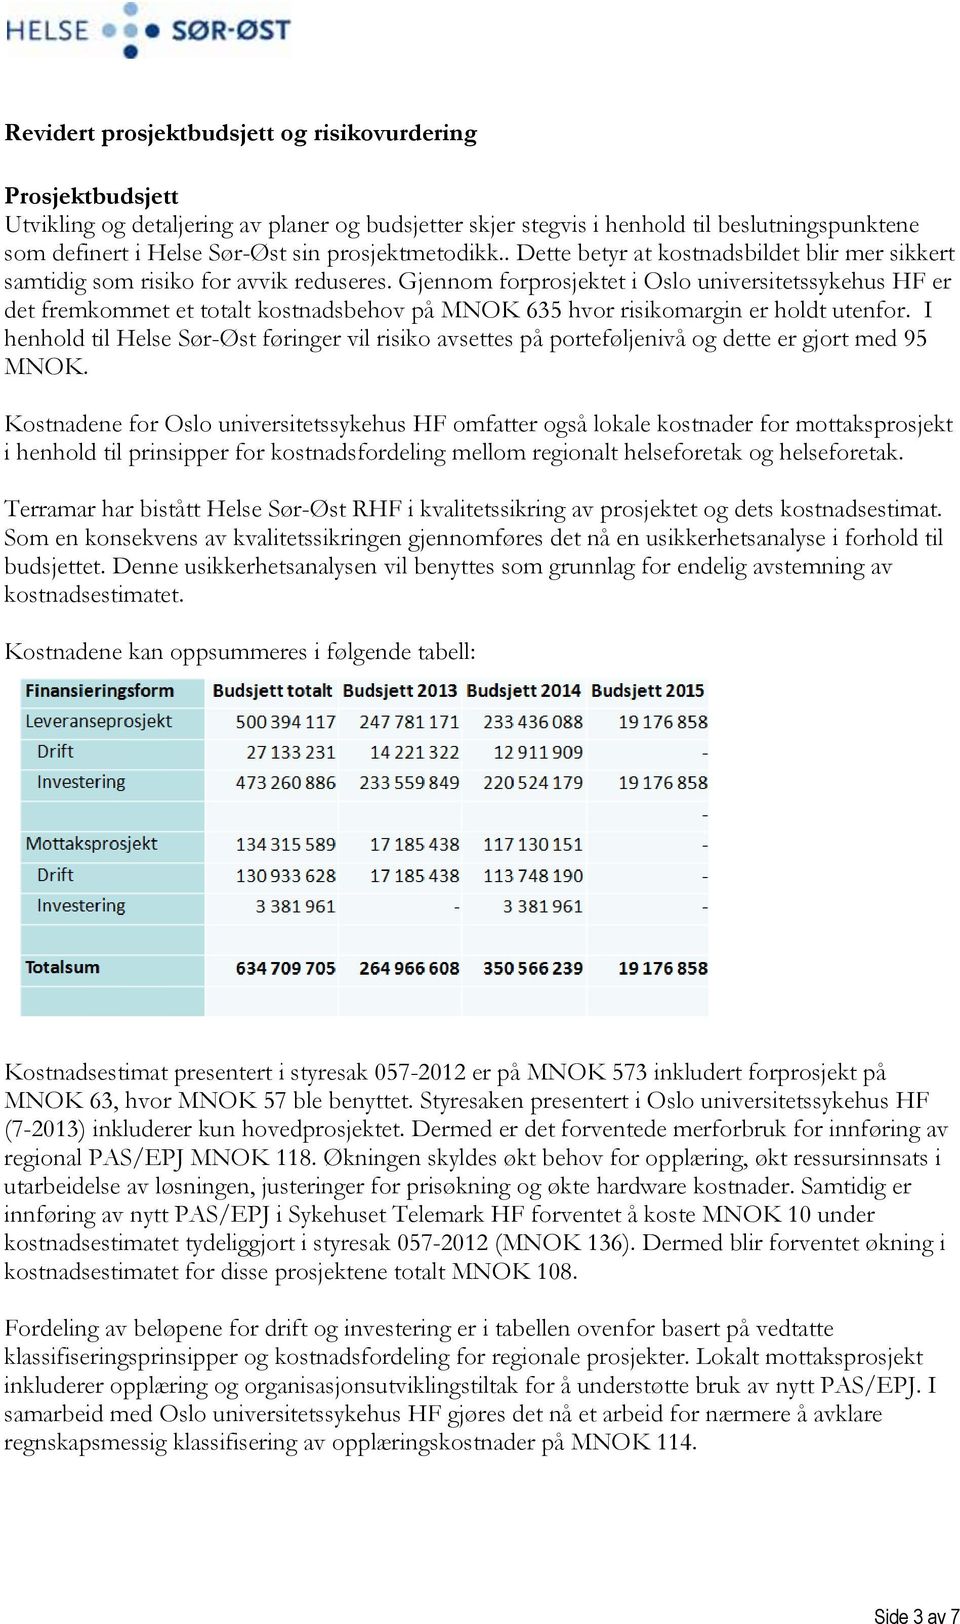 Gjennom forprosjektet i Oslo universitetssykehus HF er det fremkommet et totalt kostnadsbehov på MNOK 635 hvor risikomargin er holdt utenfor.